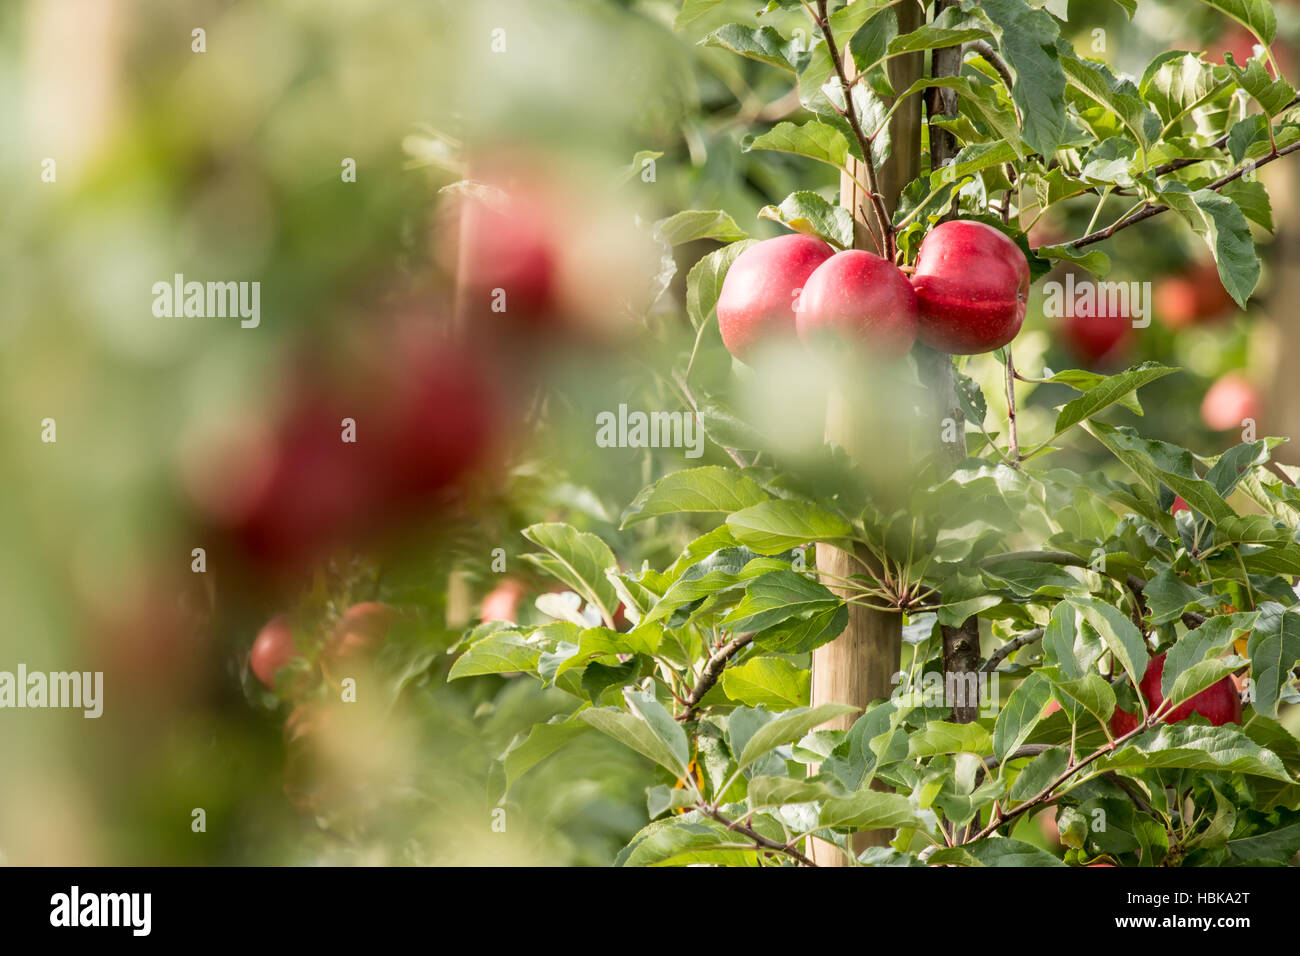 Fresh, Ripe, red Apple (Malus domestica) Stock Photo